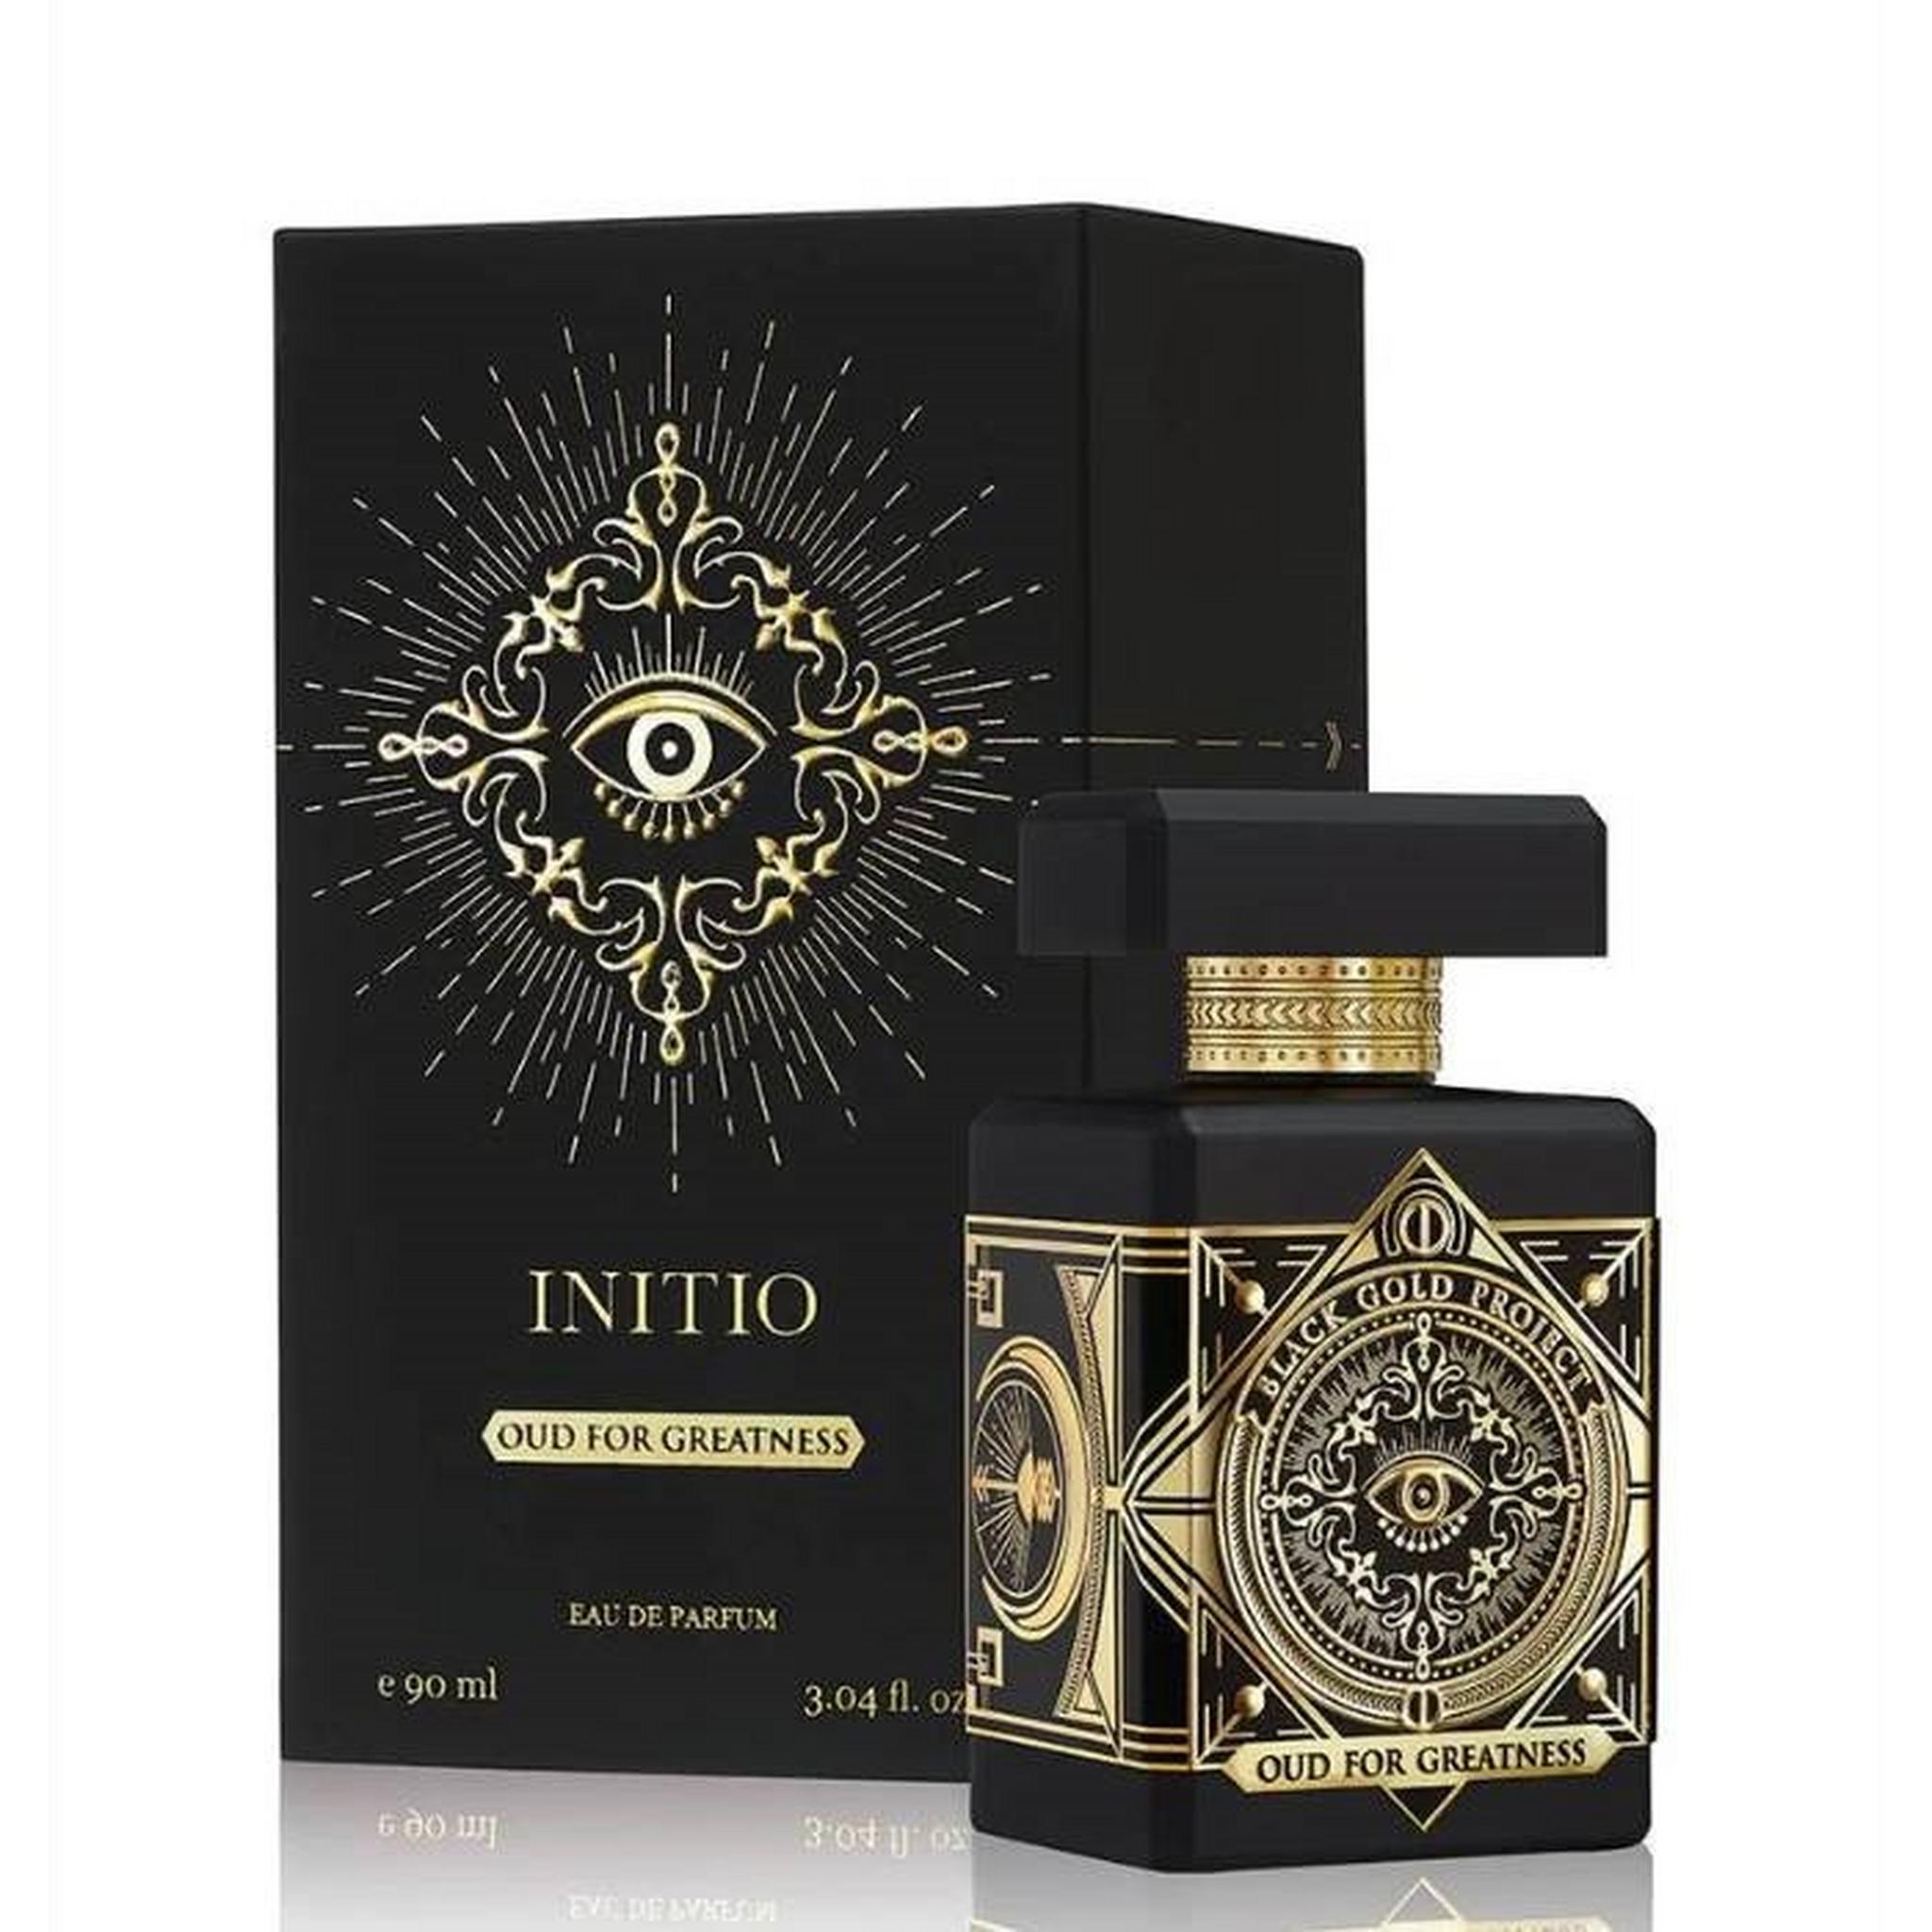 Initio Oud for Greatness Eau De Parfum – 90 ml